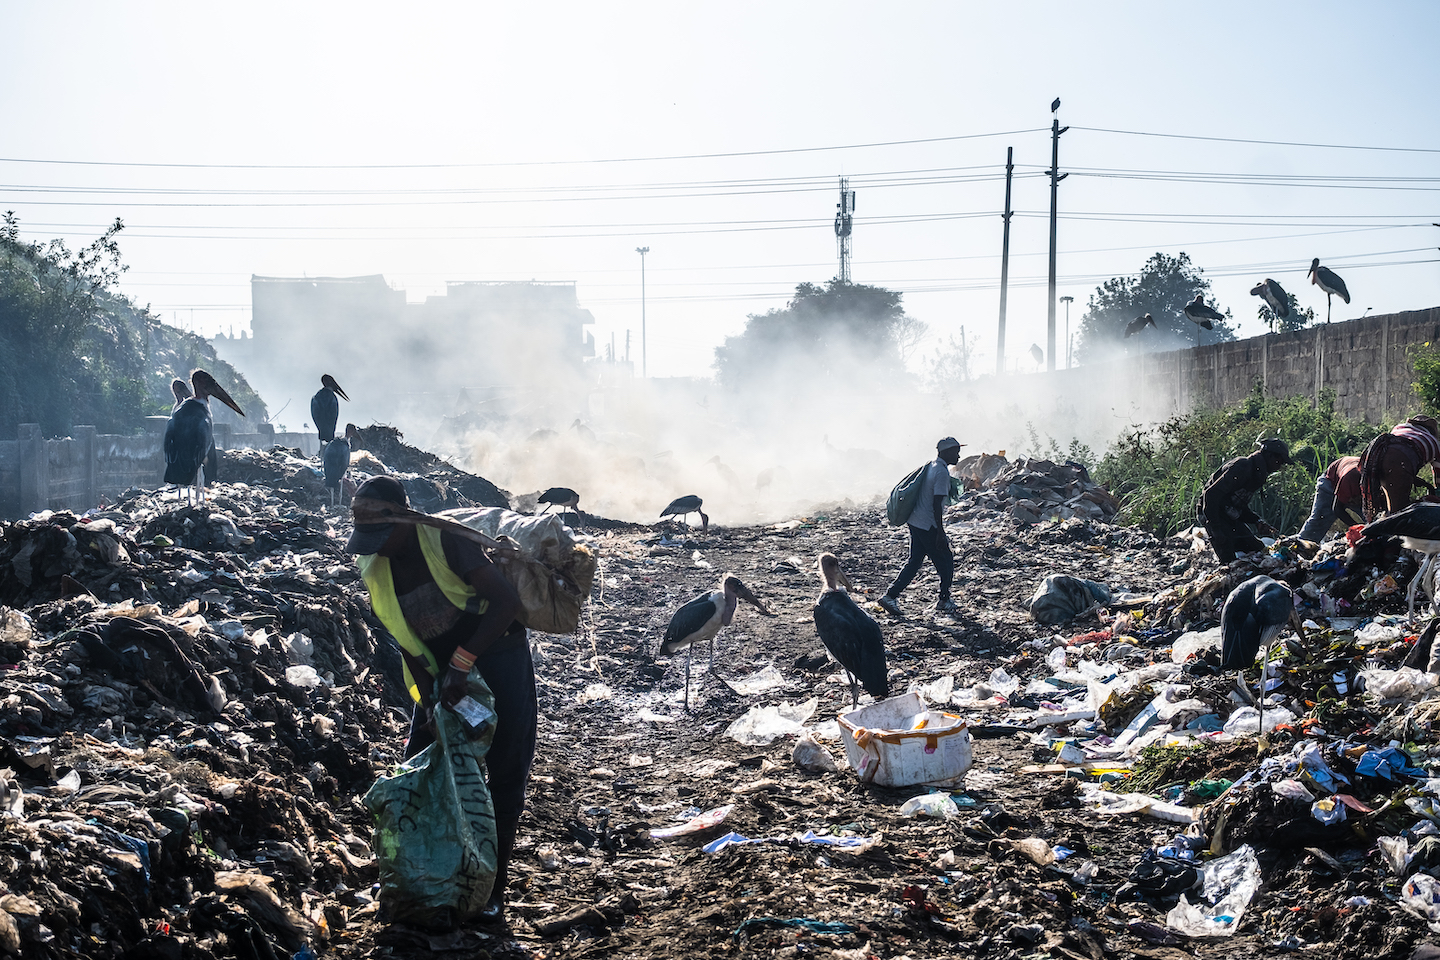 Trên toàn Kenya, đa dạng chủng loại rác thải độc hại sau khi thu gom vào hệ thống bãi chứa thường được tiêu hủy lộ thiên, vốn làm gia tăng mức độ ô nhiễm.